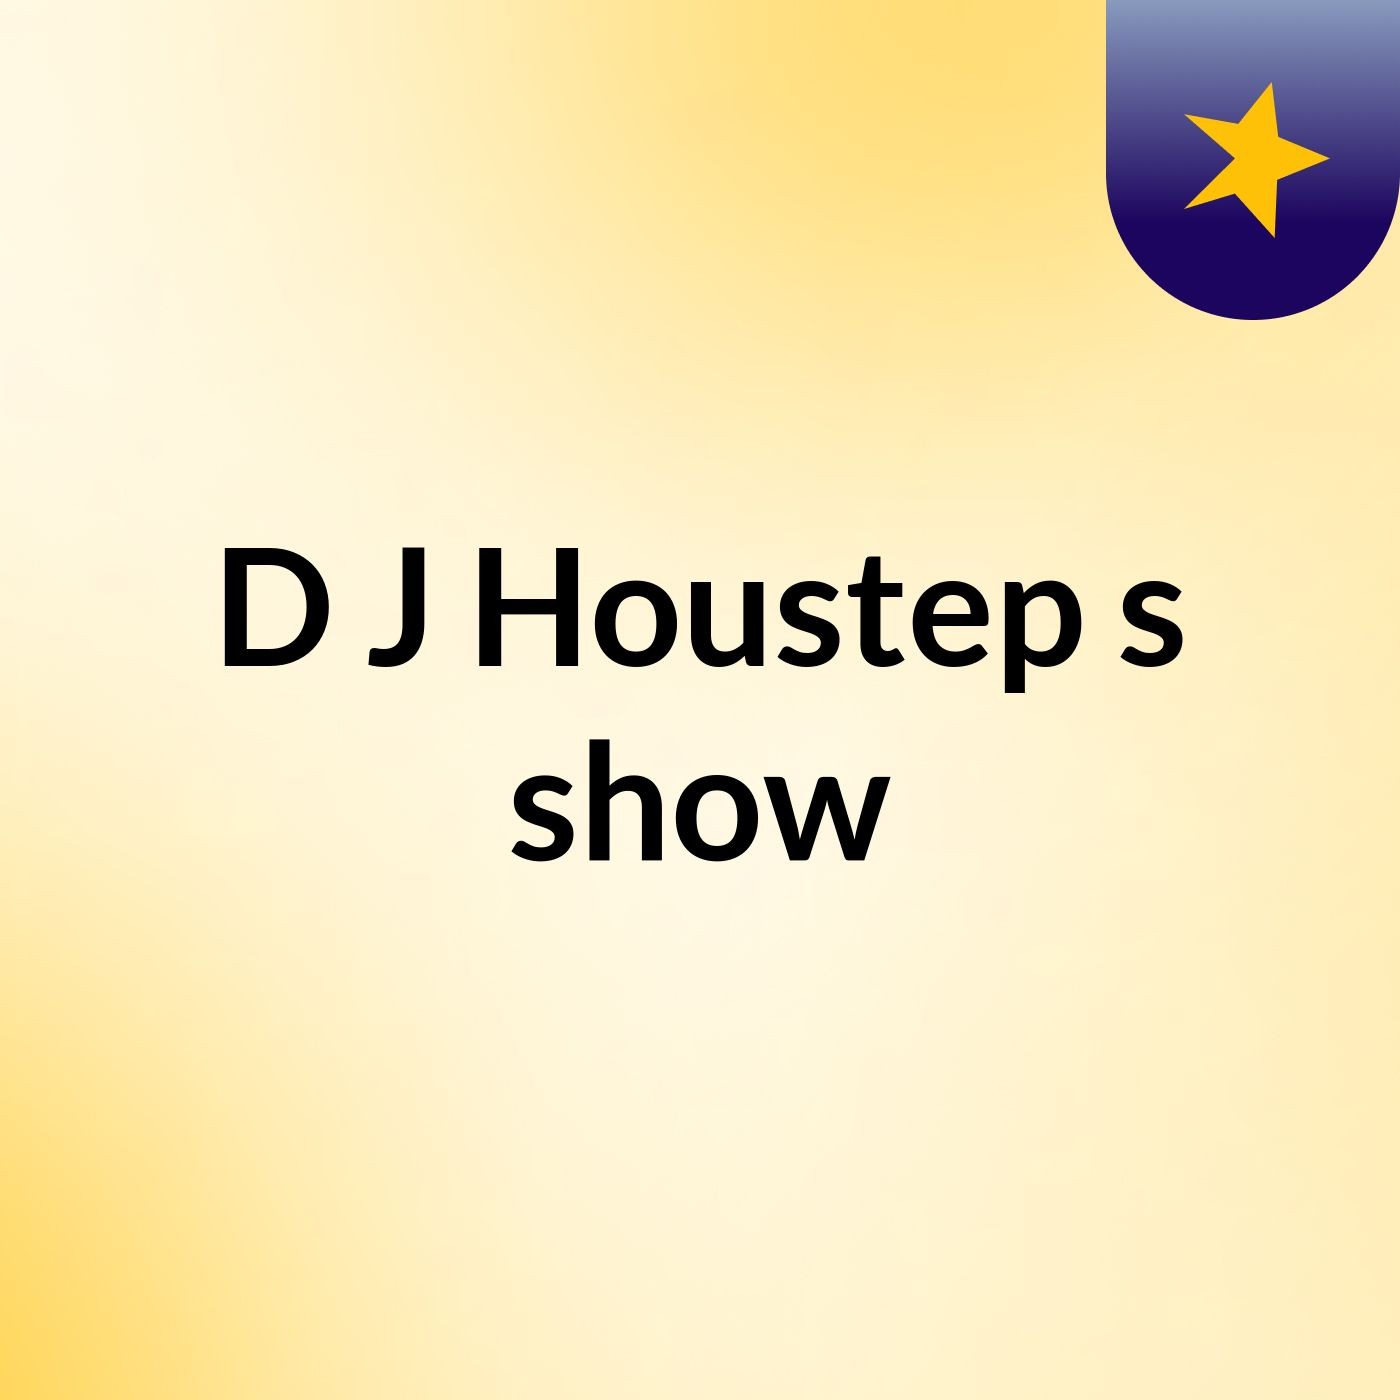 D&J Houstep's show